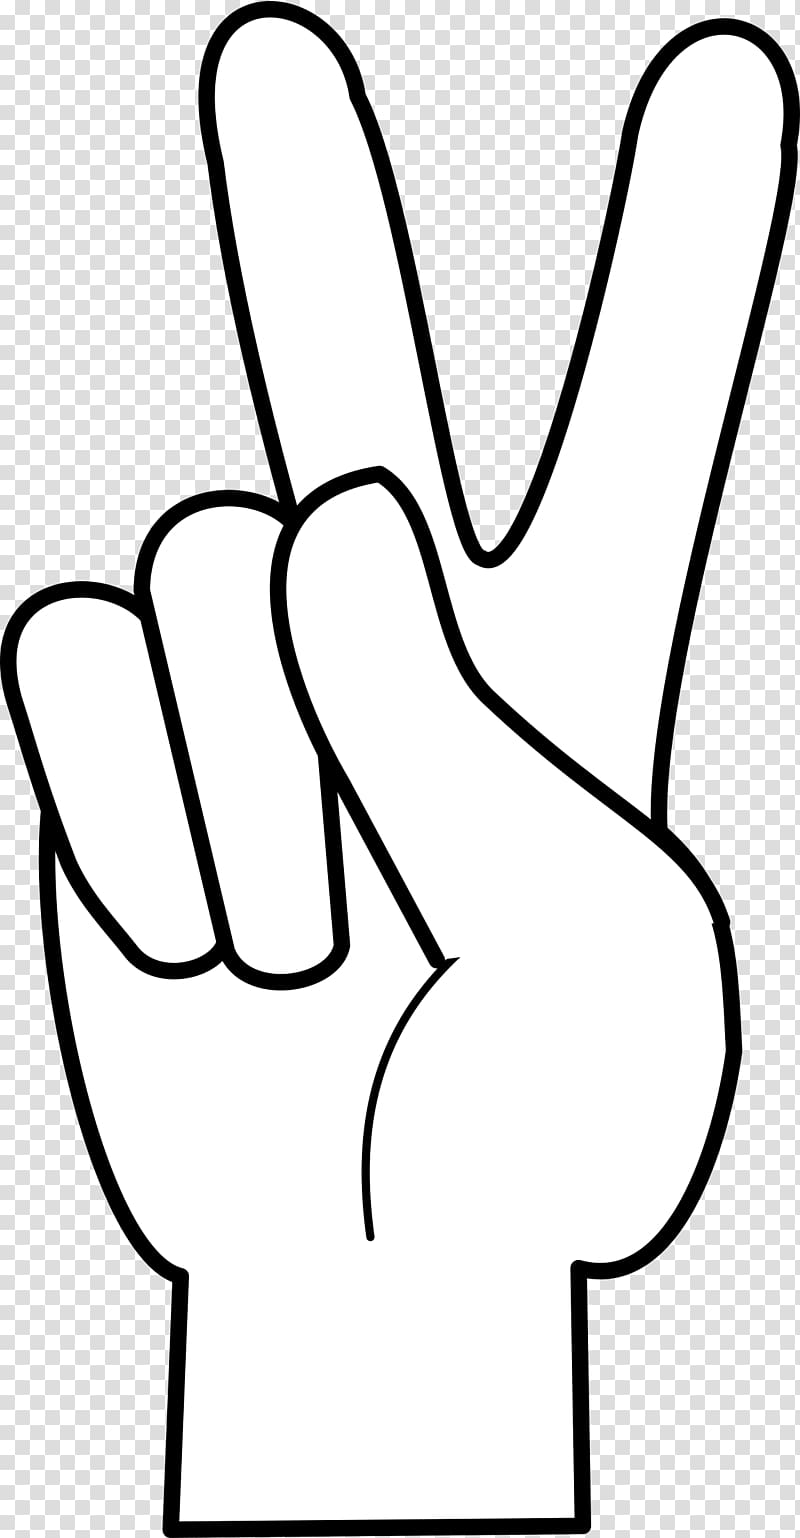 Peace symbols V sign Finger , symbol transparent background PNG clipart